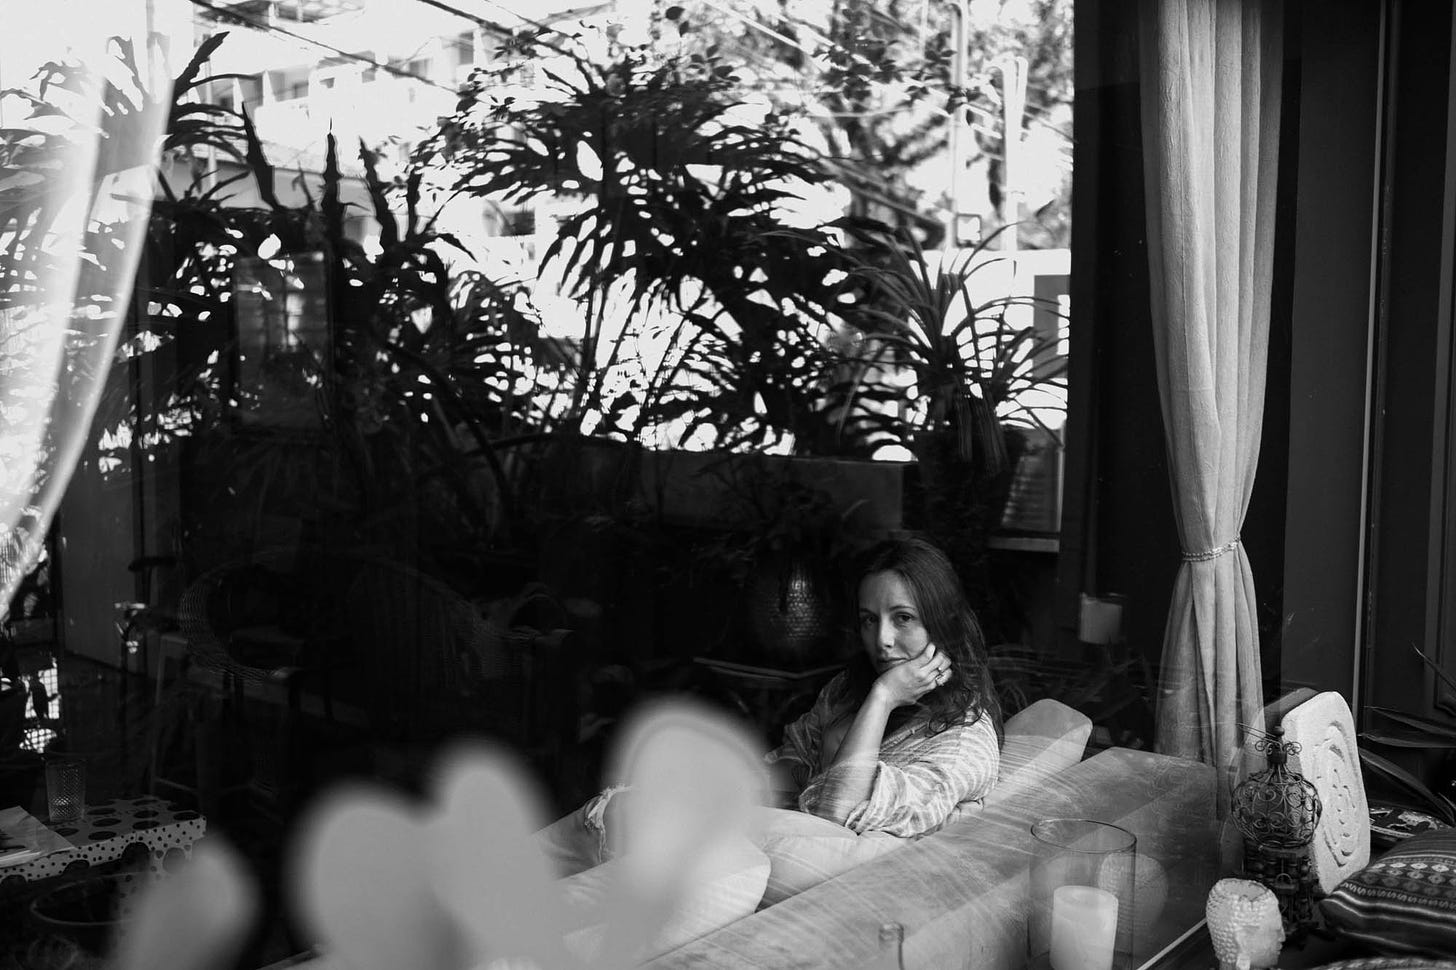 Mulher sentada em sofá atrás de vidraça olhando pela janela através de plantas, imagem em preto e branco